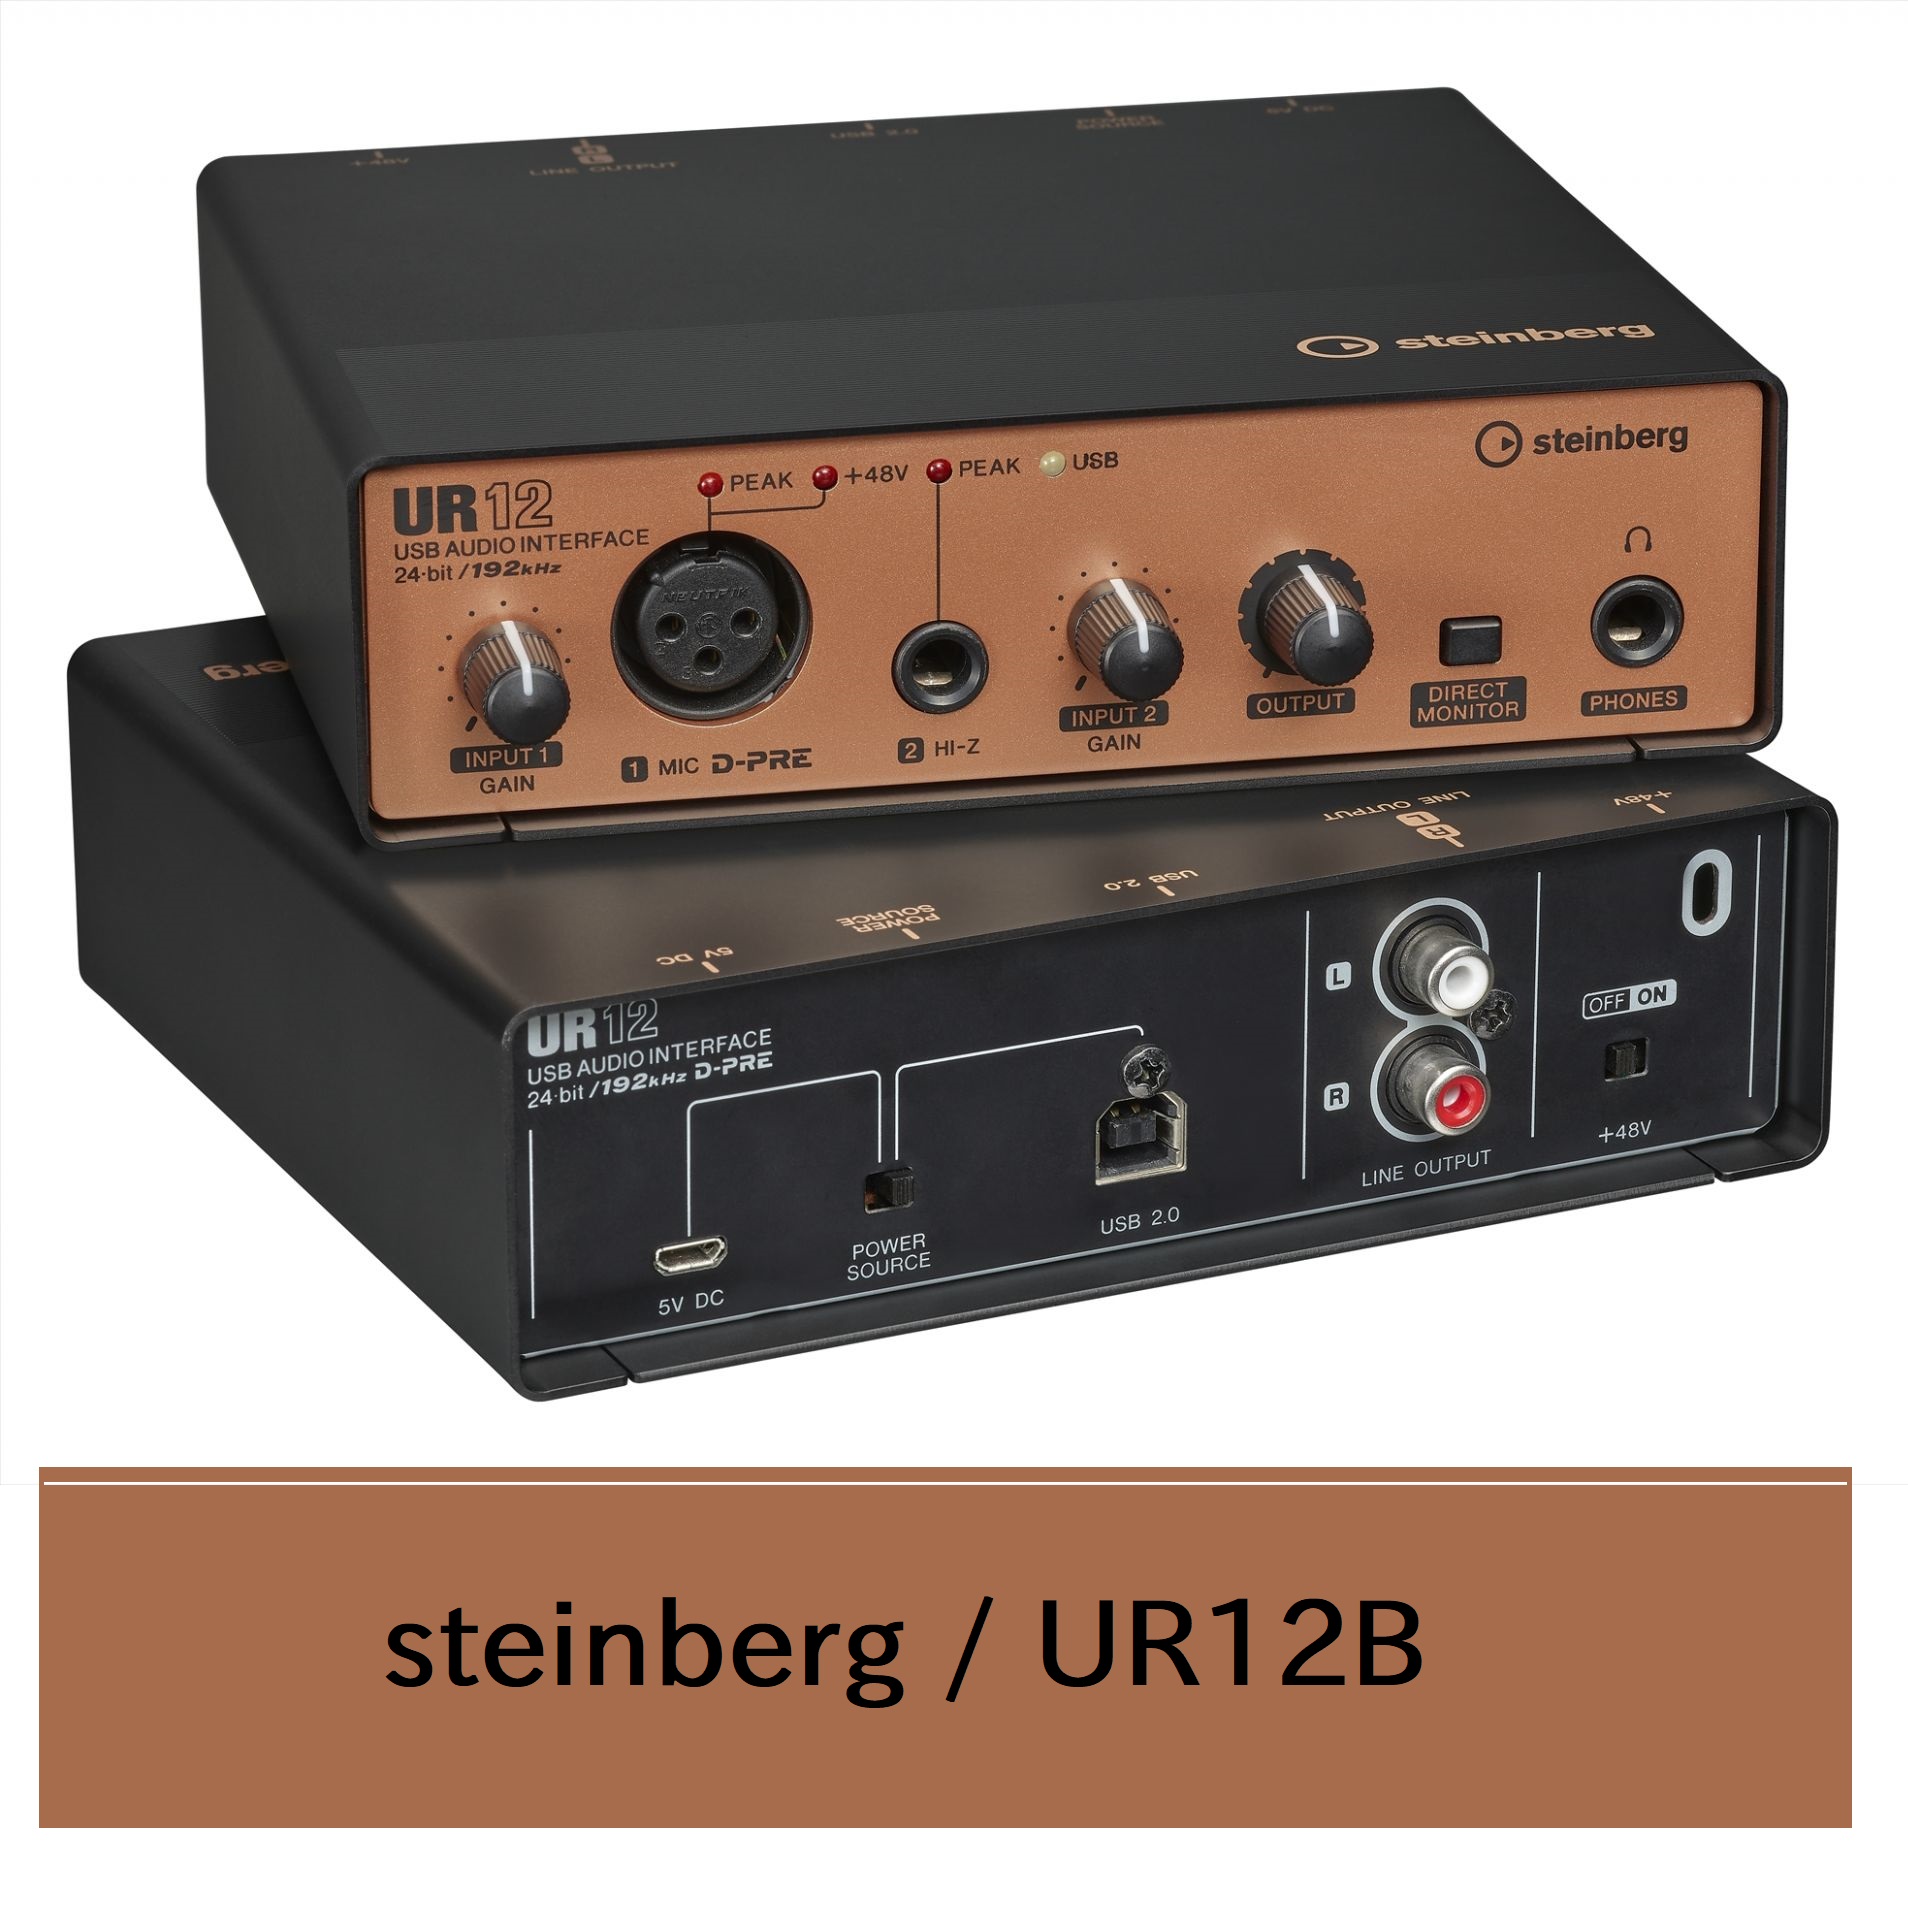 ブラックの筐体と銅色のフロントパネルを採用！ 島村楽器大分店にsteinberg (スタインバーグ)のオーディオインターフェイス「UR12B」が入荷致しました！ 黒と銅色を基調としたシックなデザインで、これから音楽制作や Web 配信を始めるビギナーの方から、PC からのハイレゾ汎用再生を必要として […]